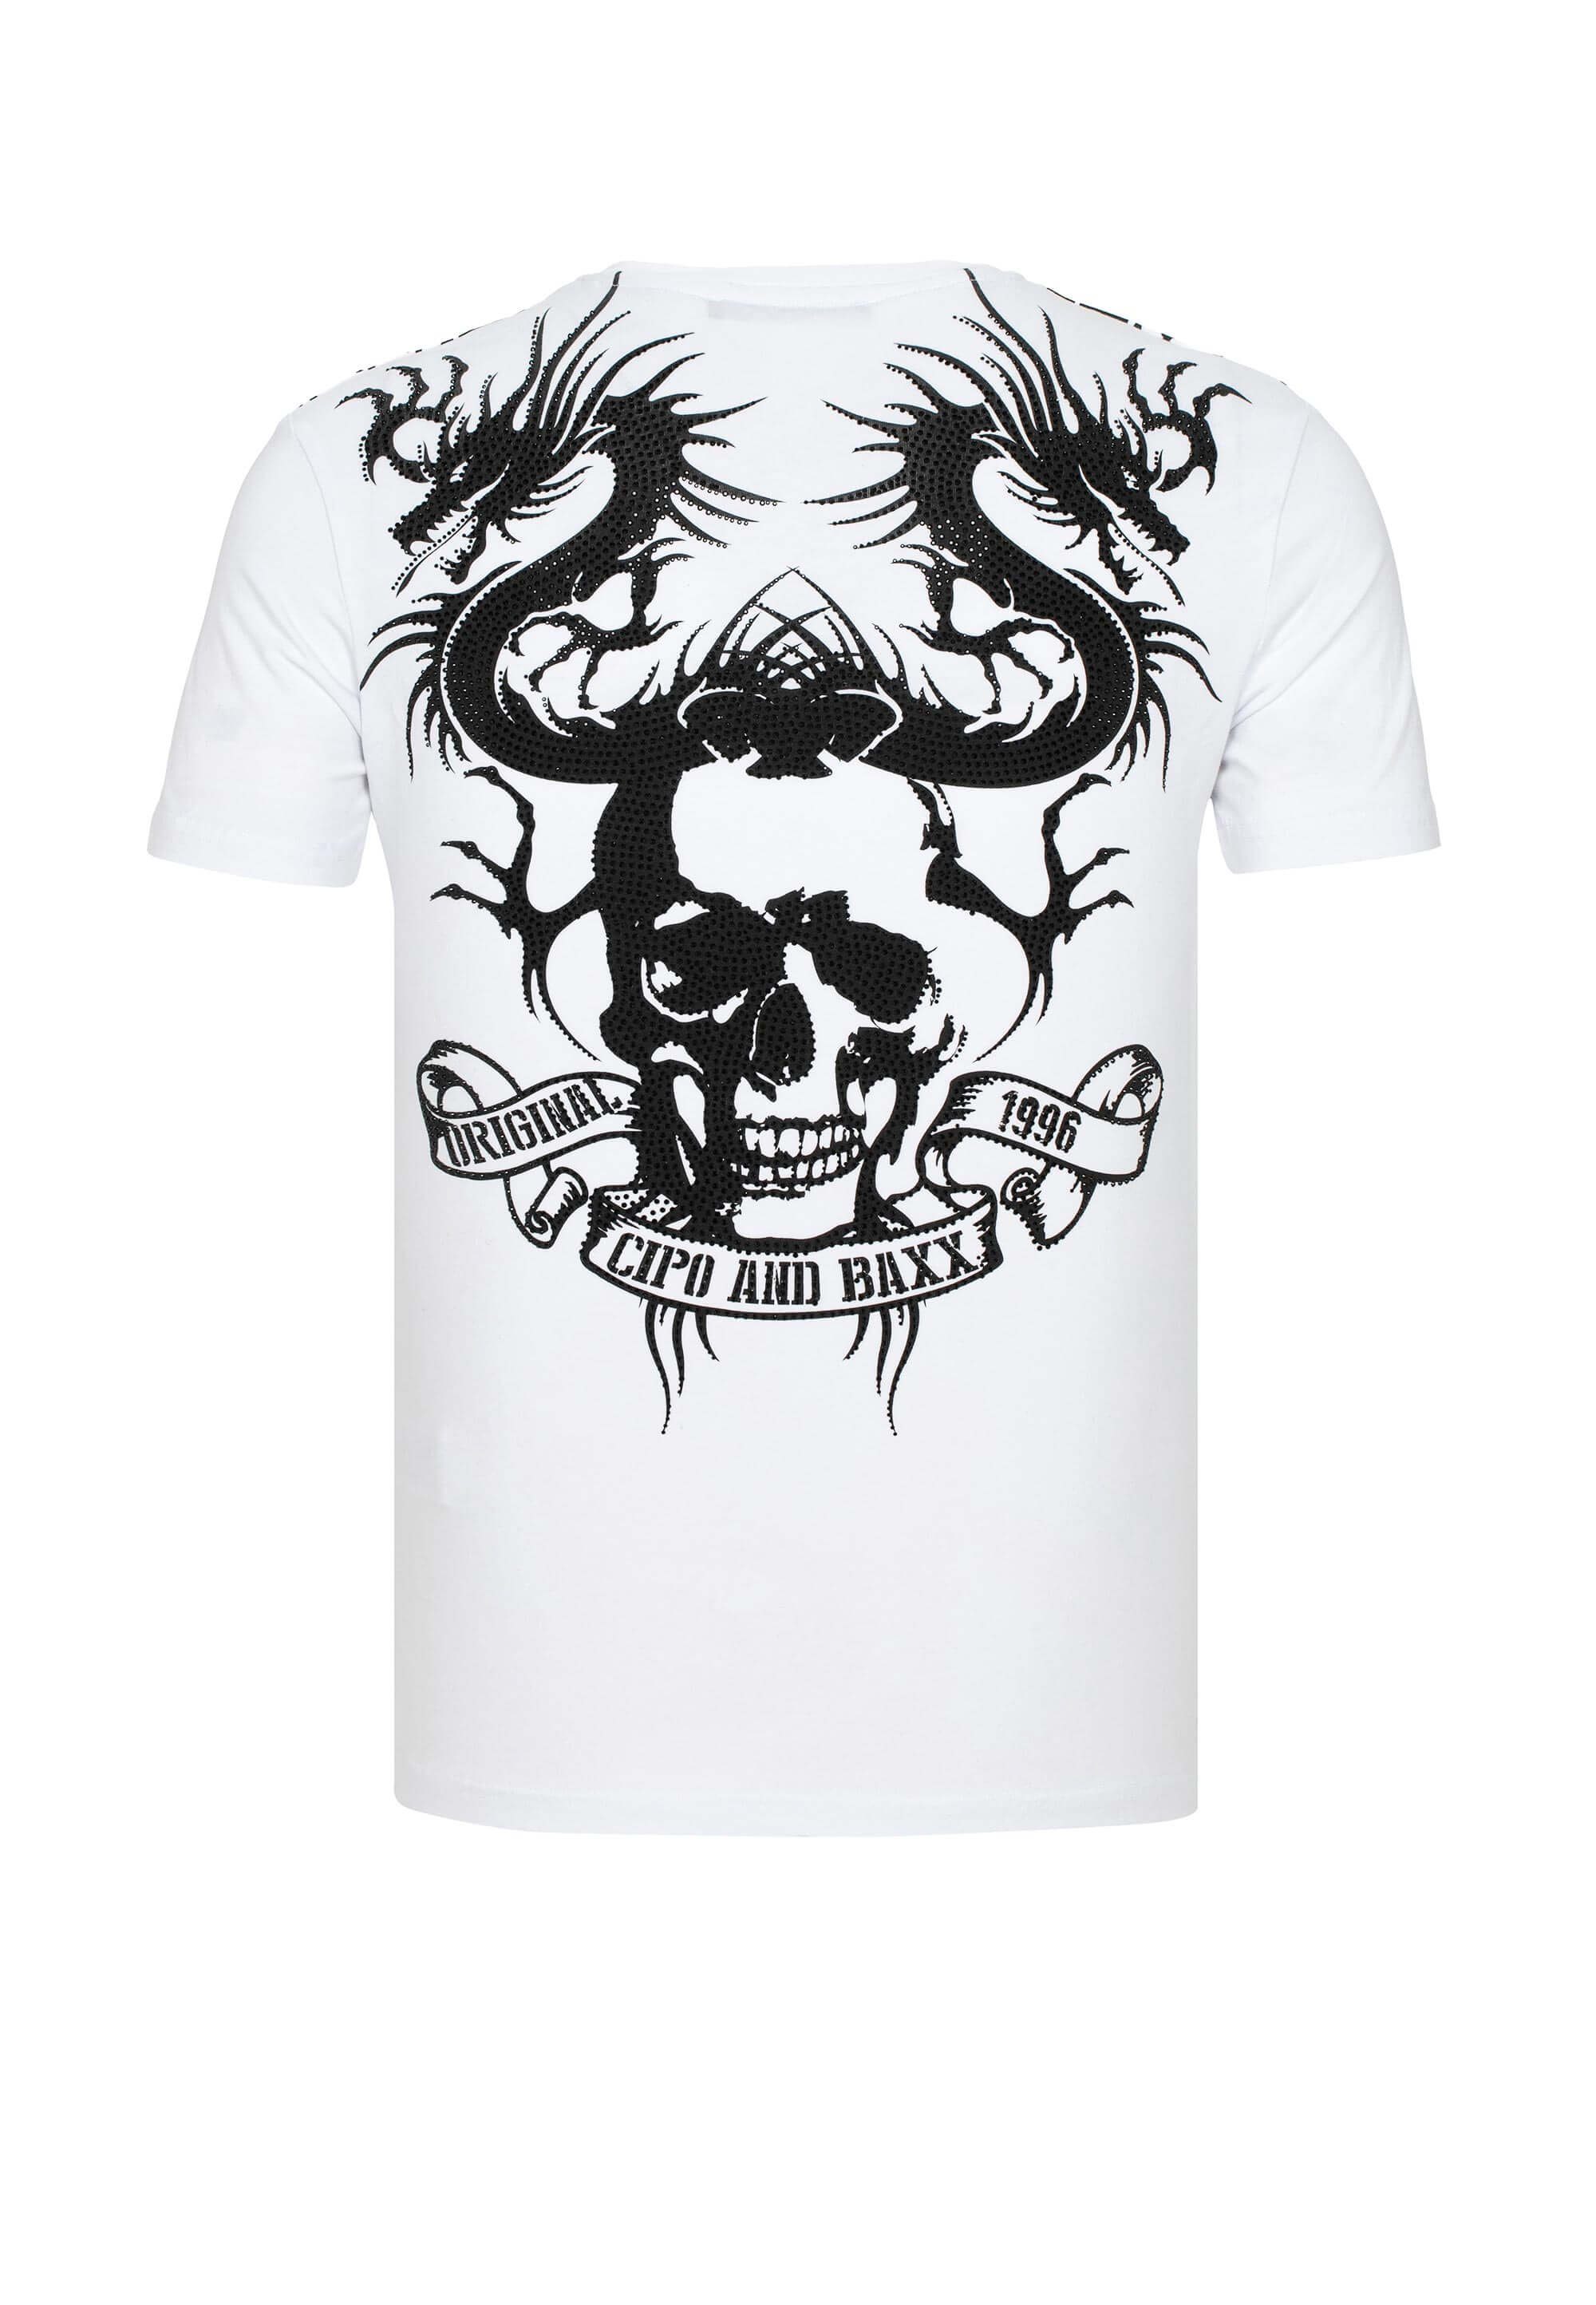 T-Shirt Cipo Edelsteinbestickung & mit weiß Baxx